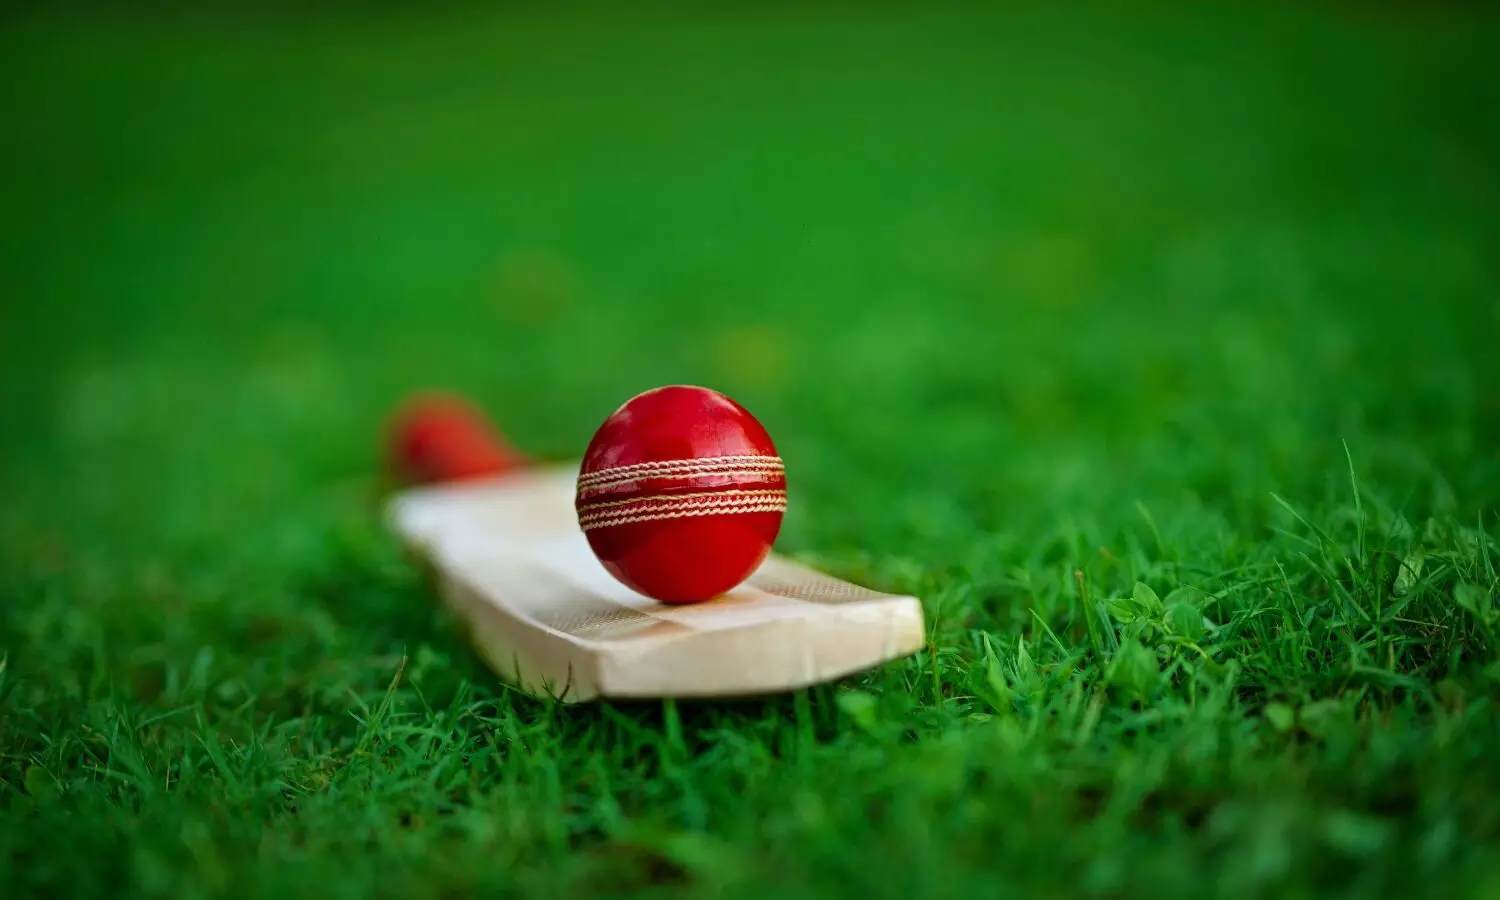 cricket Bat and Ball